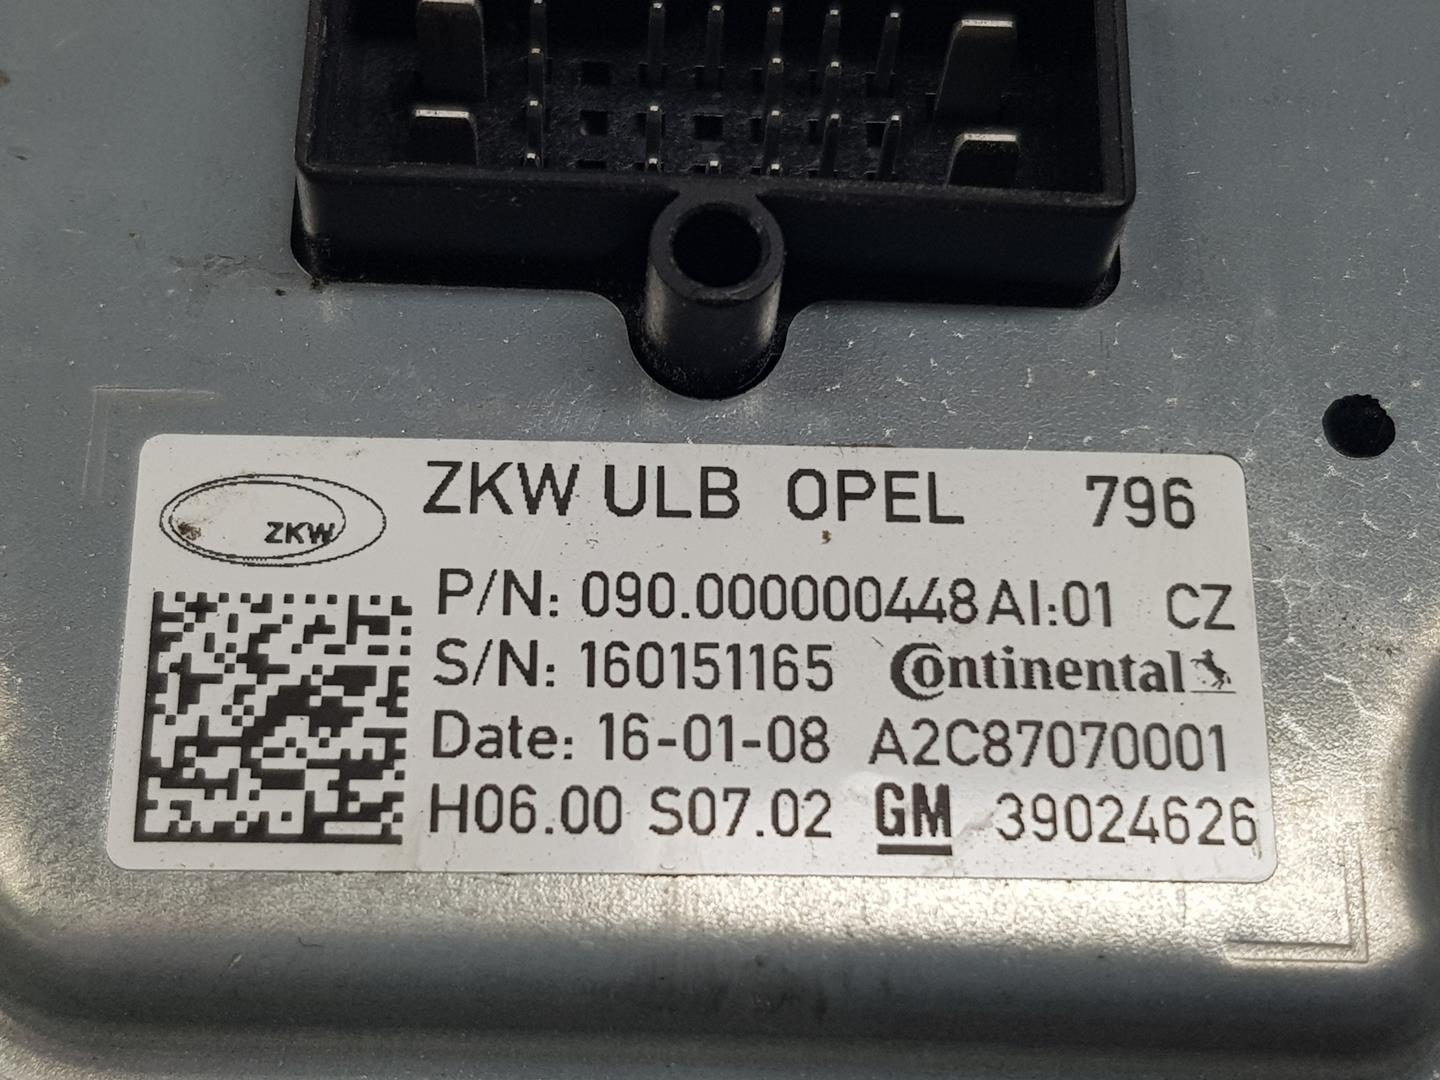 OPEL Astra K (2015-2021) Xenon Light Control Unit 39024626, 39024626 24244819